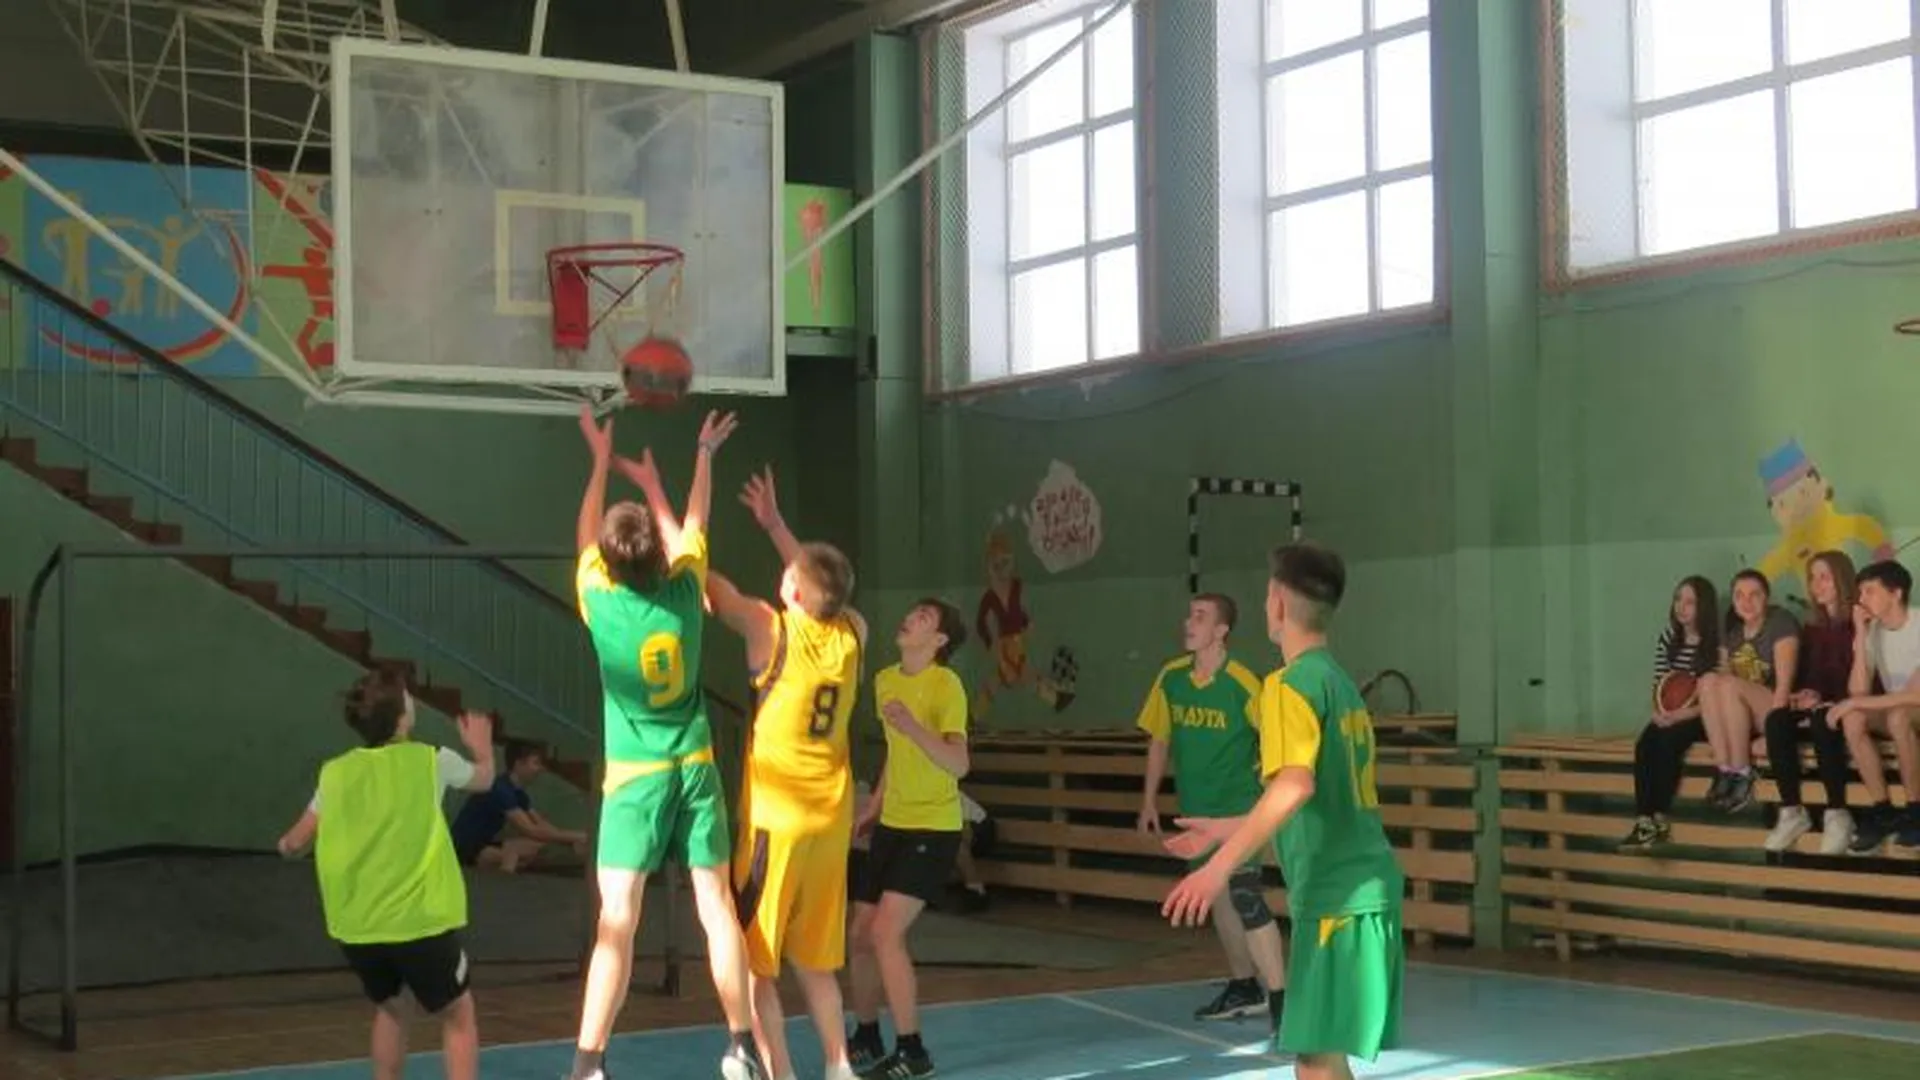 Открытое первенство по стритболу среди школьников состоялось в Коломенском районе